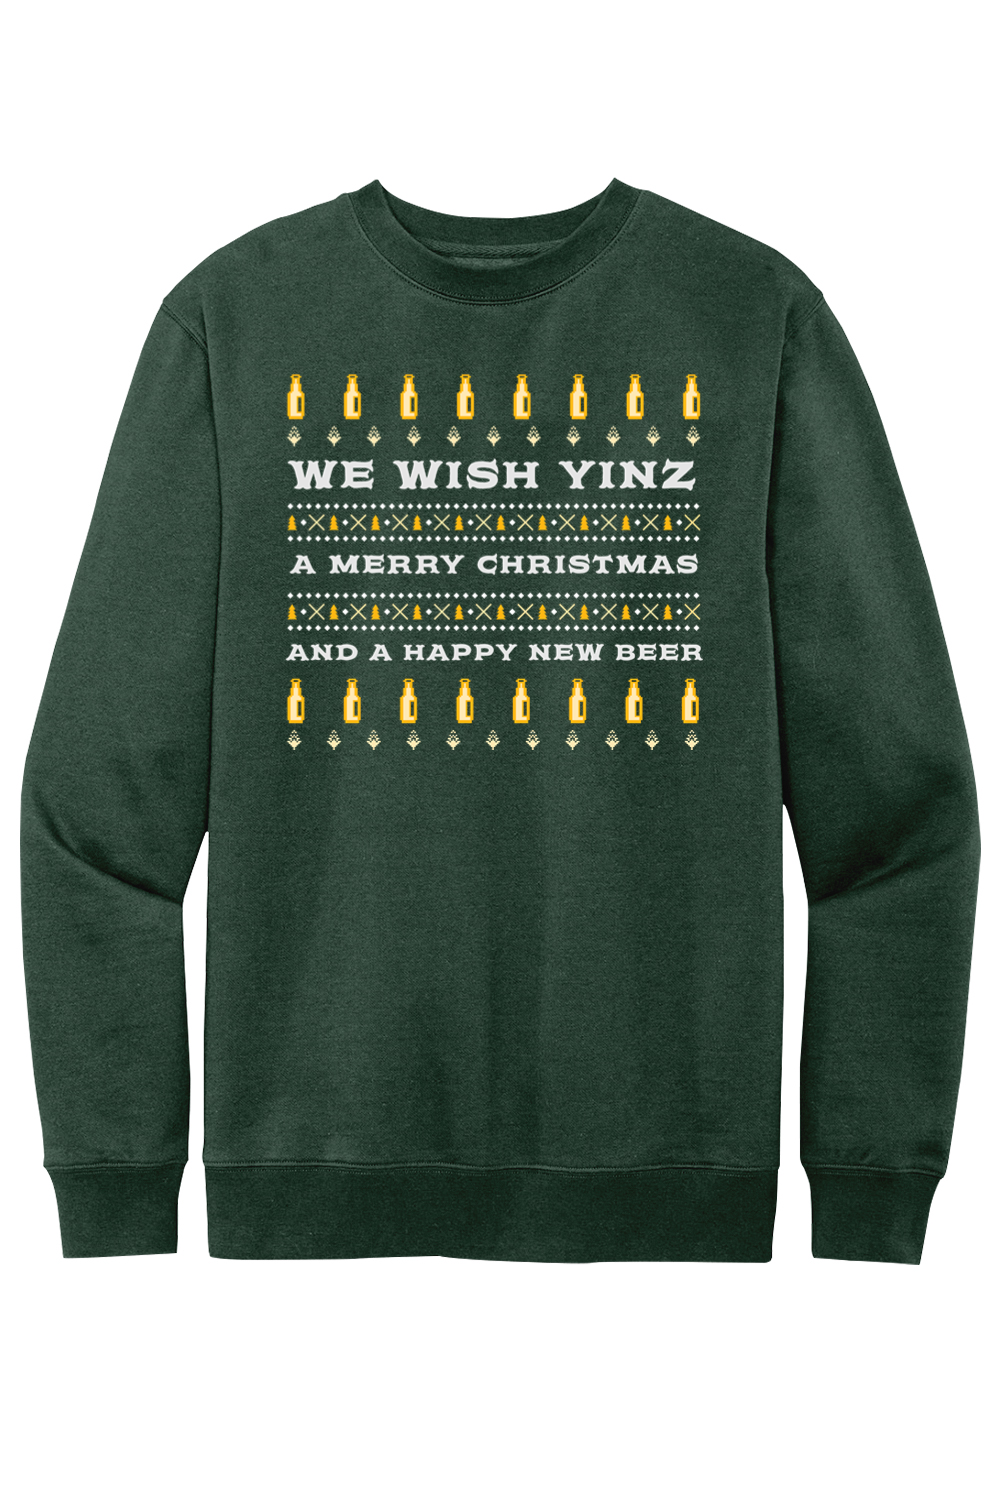 We Wish Yinz a Merry Christmas - Ugly Christmas Sweater - Fleece Crew Sweatshirt - Yinzylvania